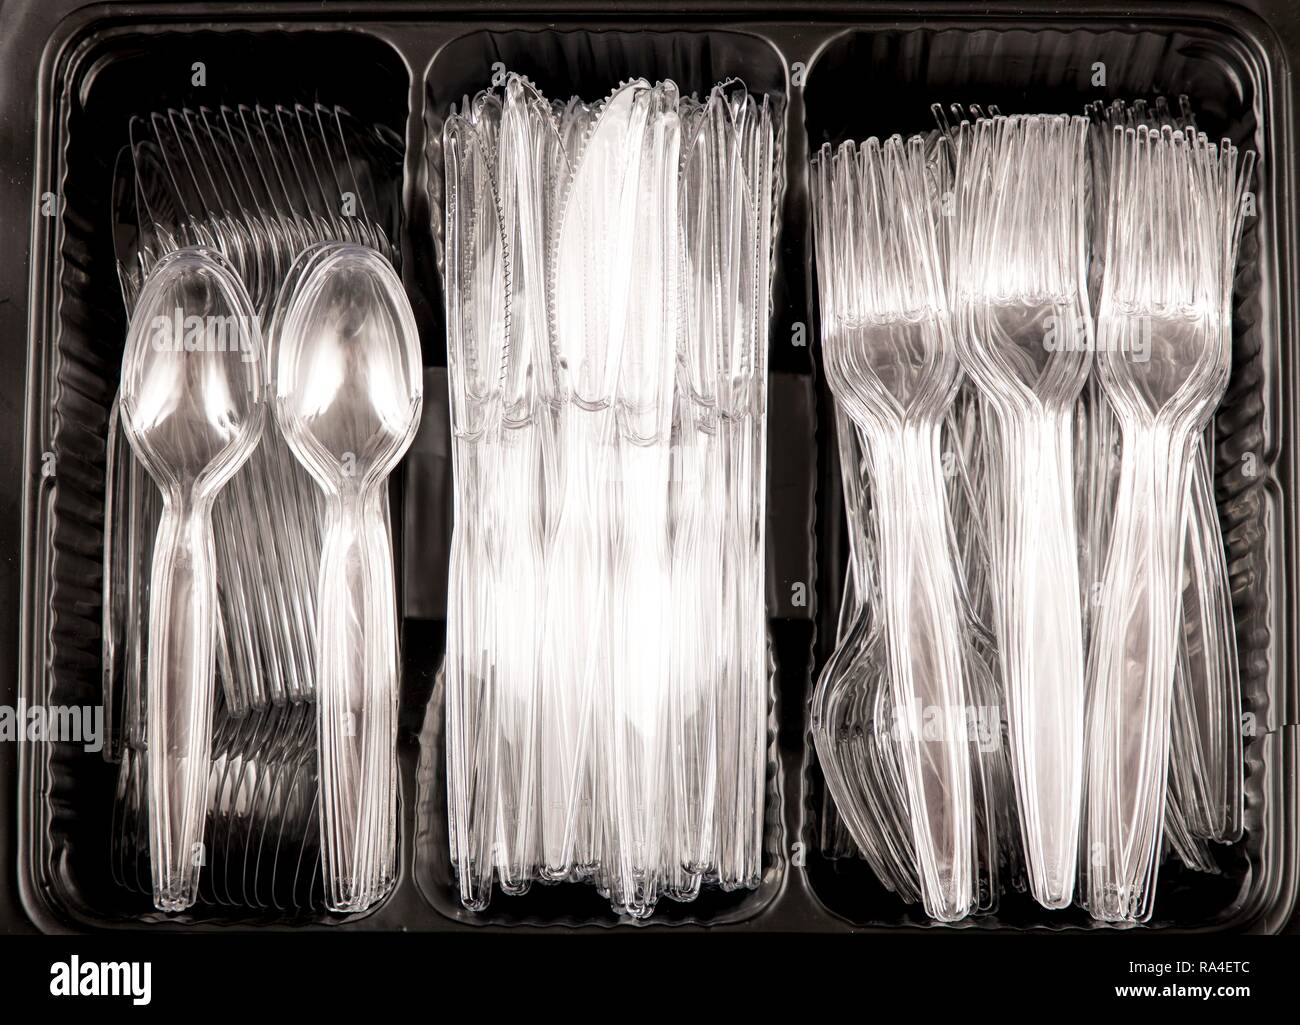 Les ustensiles en plastique, des couverts jetables, couteaux, fourchettes, cuillères, les déchets en plastique, transparent, transparent Banque D'Images